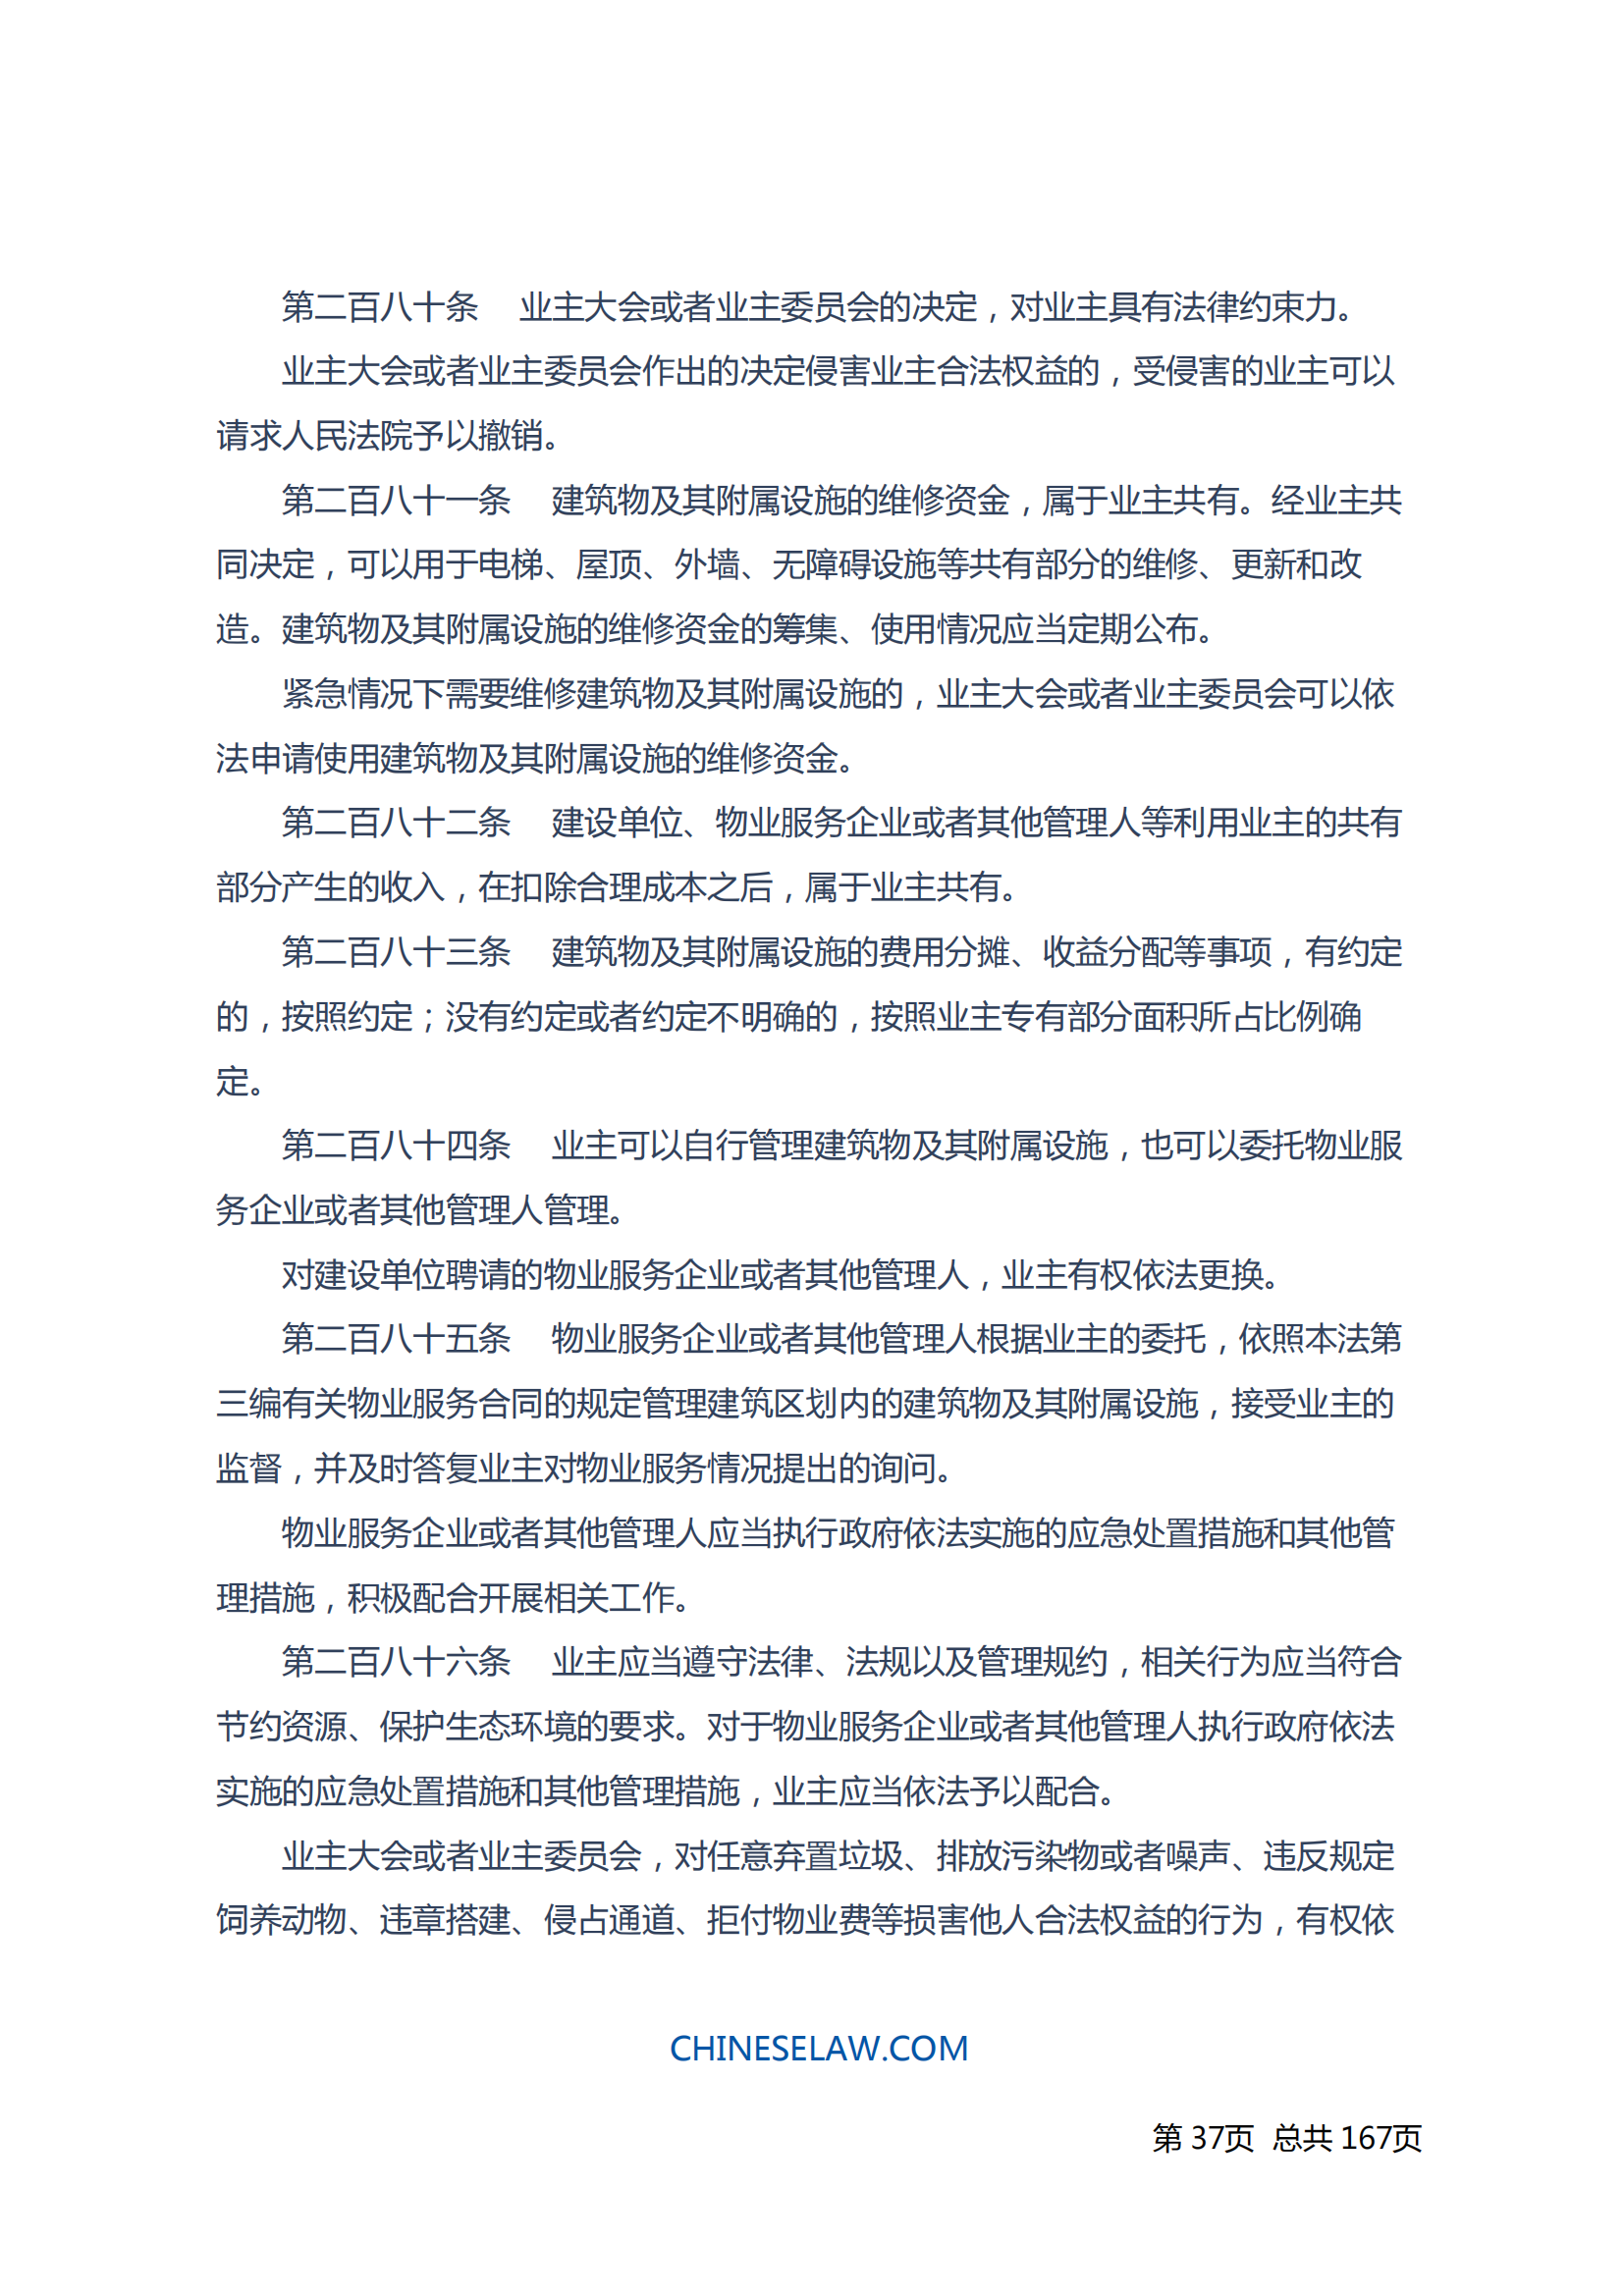 中华人民共和国民法典_36